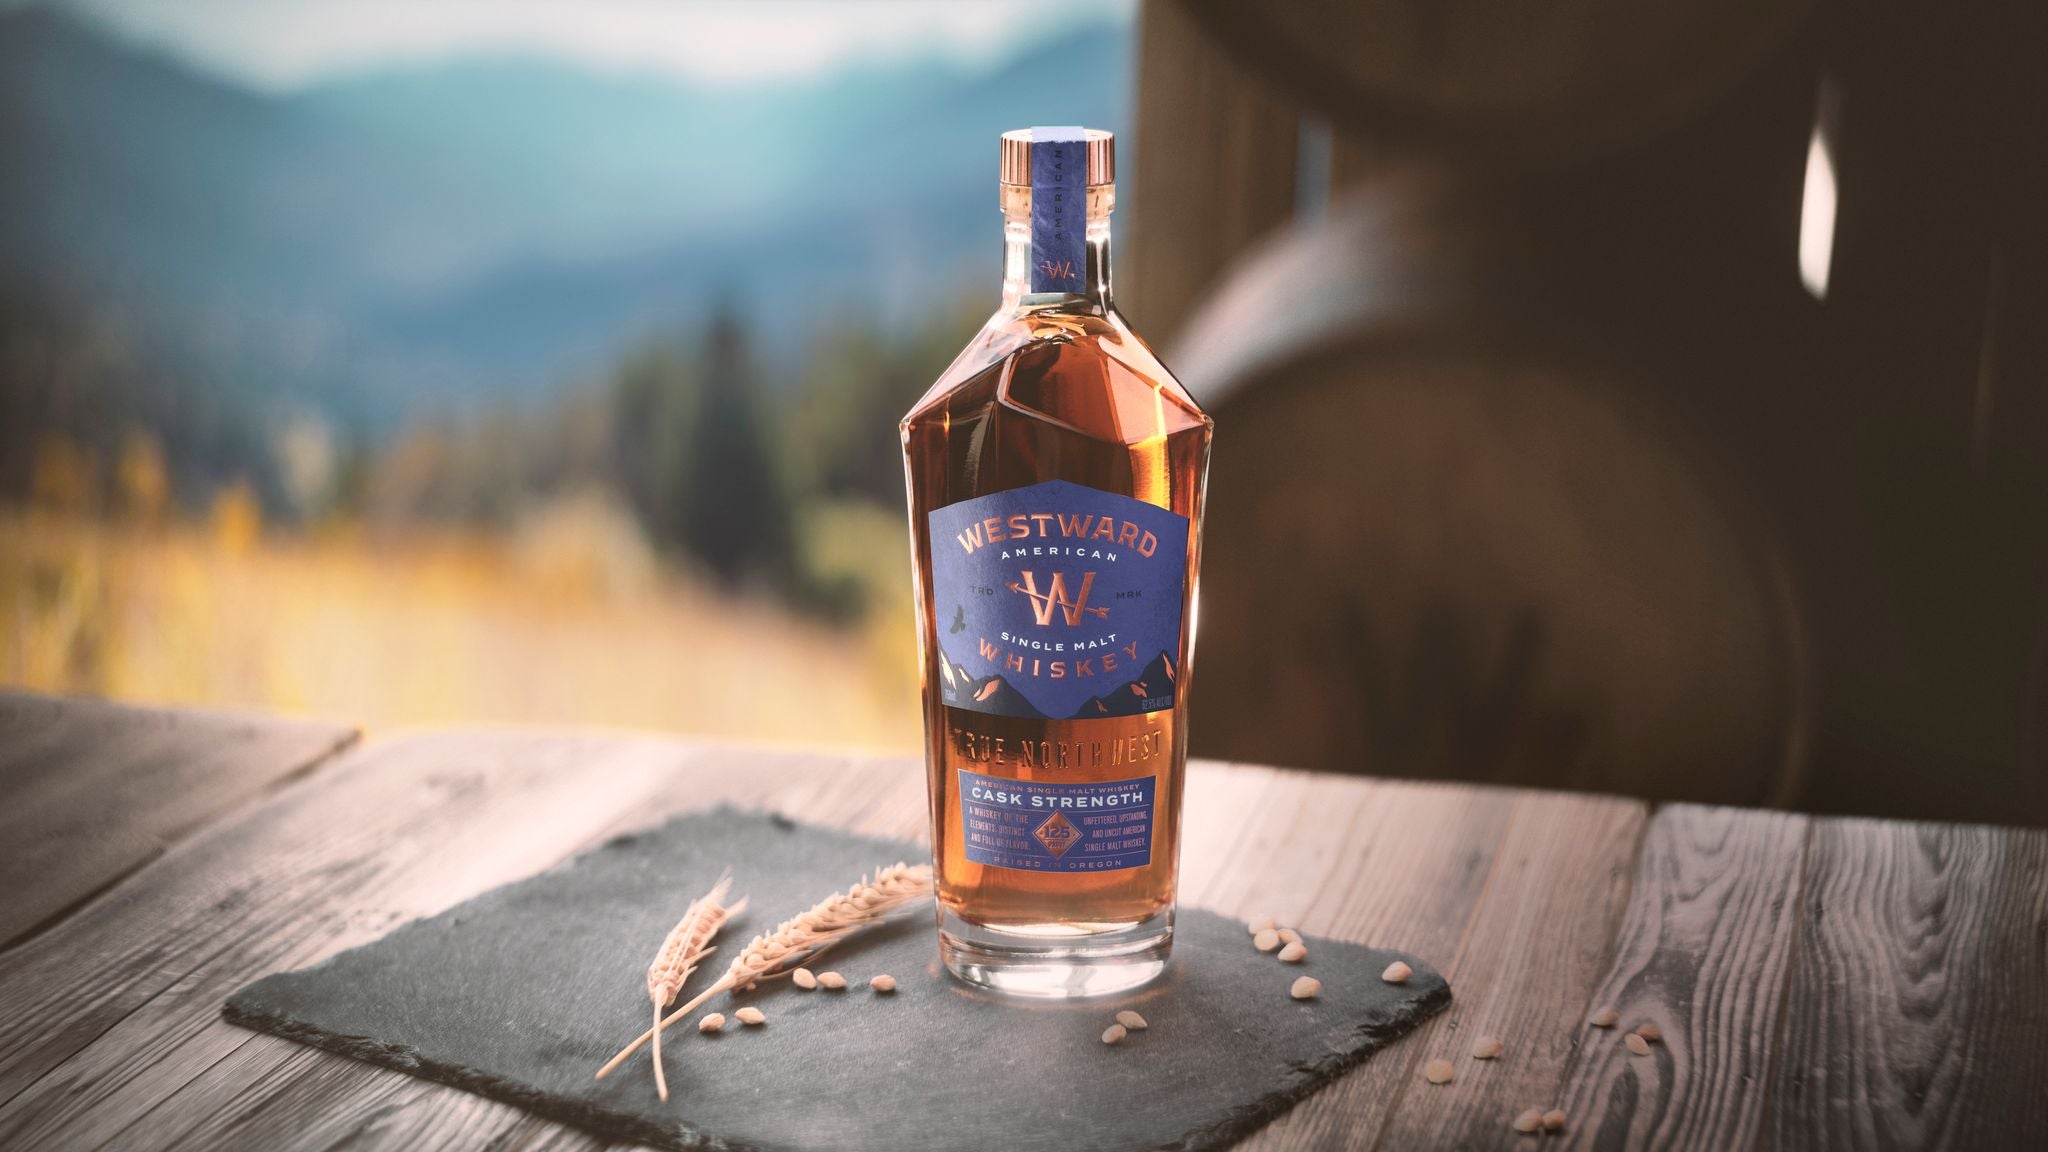 Westward American Single Malt Cask Strength Whiskey